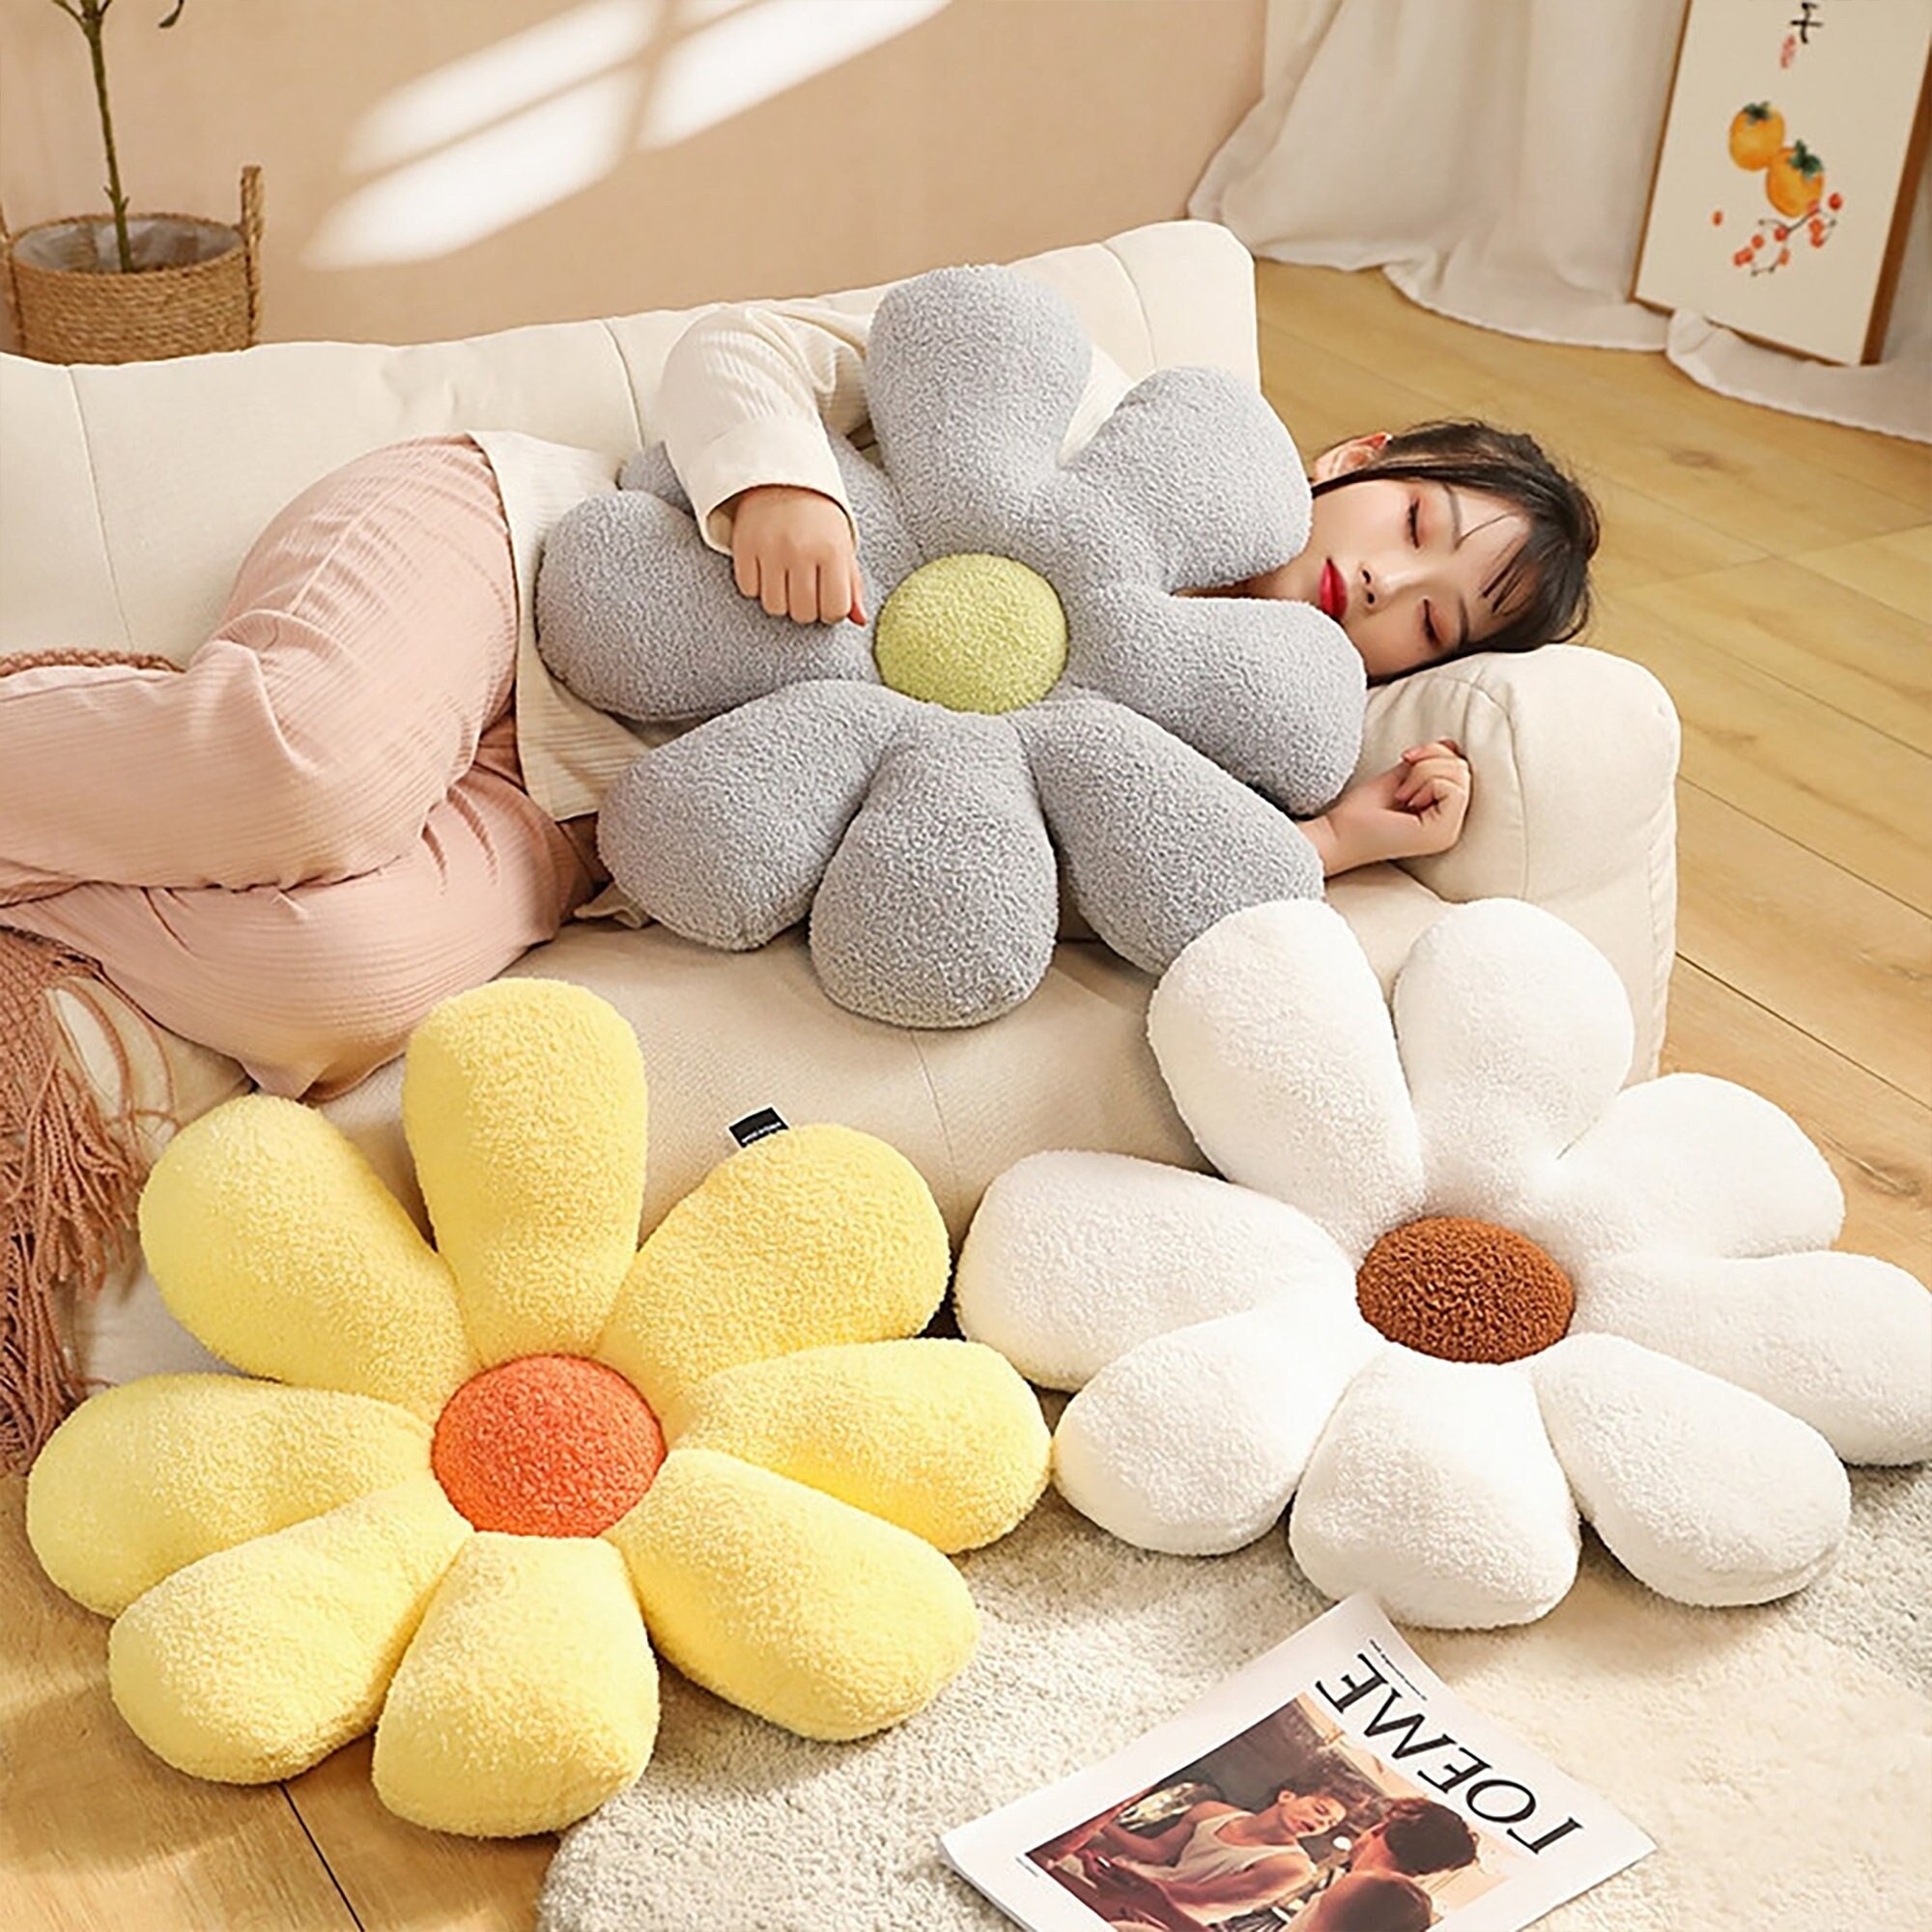 Fluffy Plush Square Waist Throw Pillow Case Sofa Cushion Cover Home Decor  AU